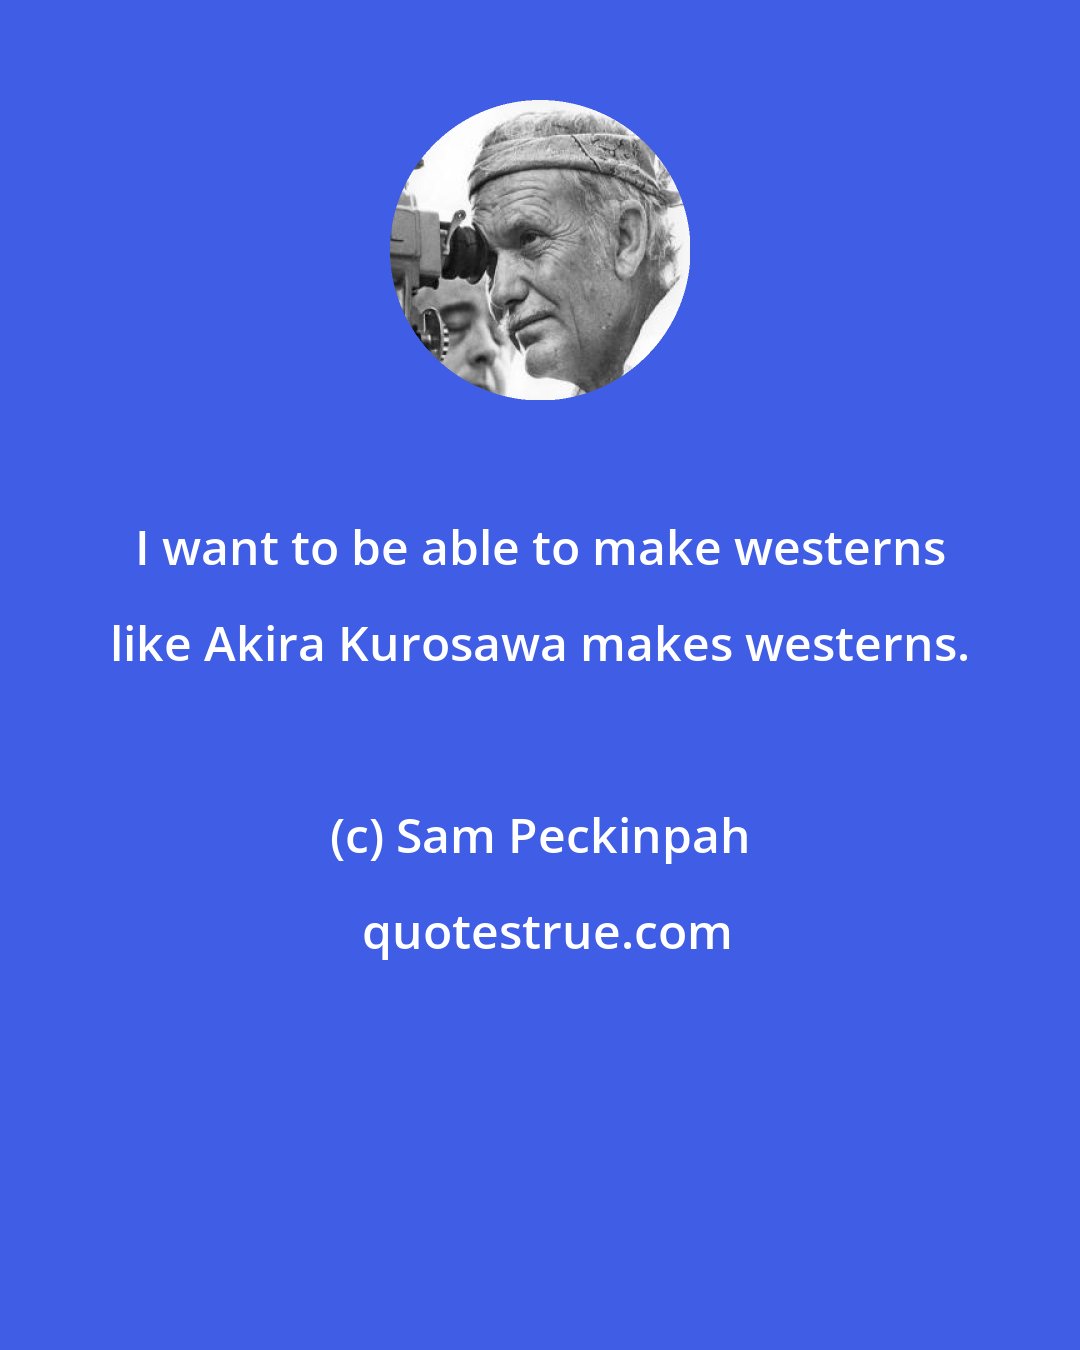 Sam Peckinpah: I want to be able to make westerns like Akira Kurosawa makes westerns.